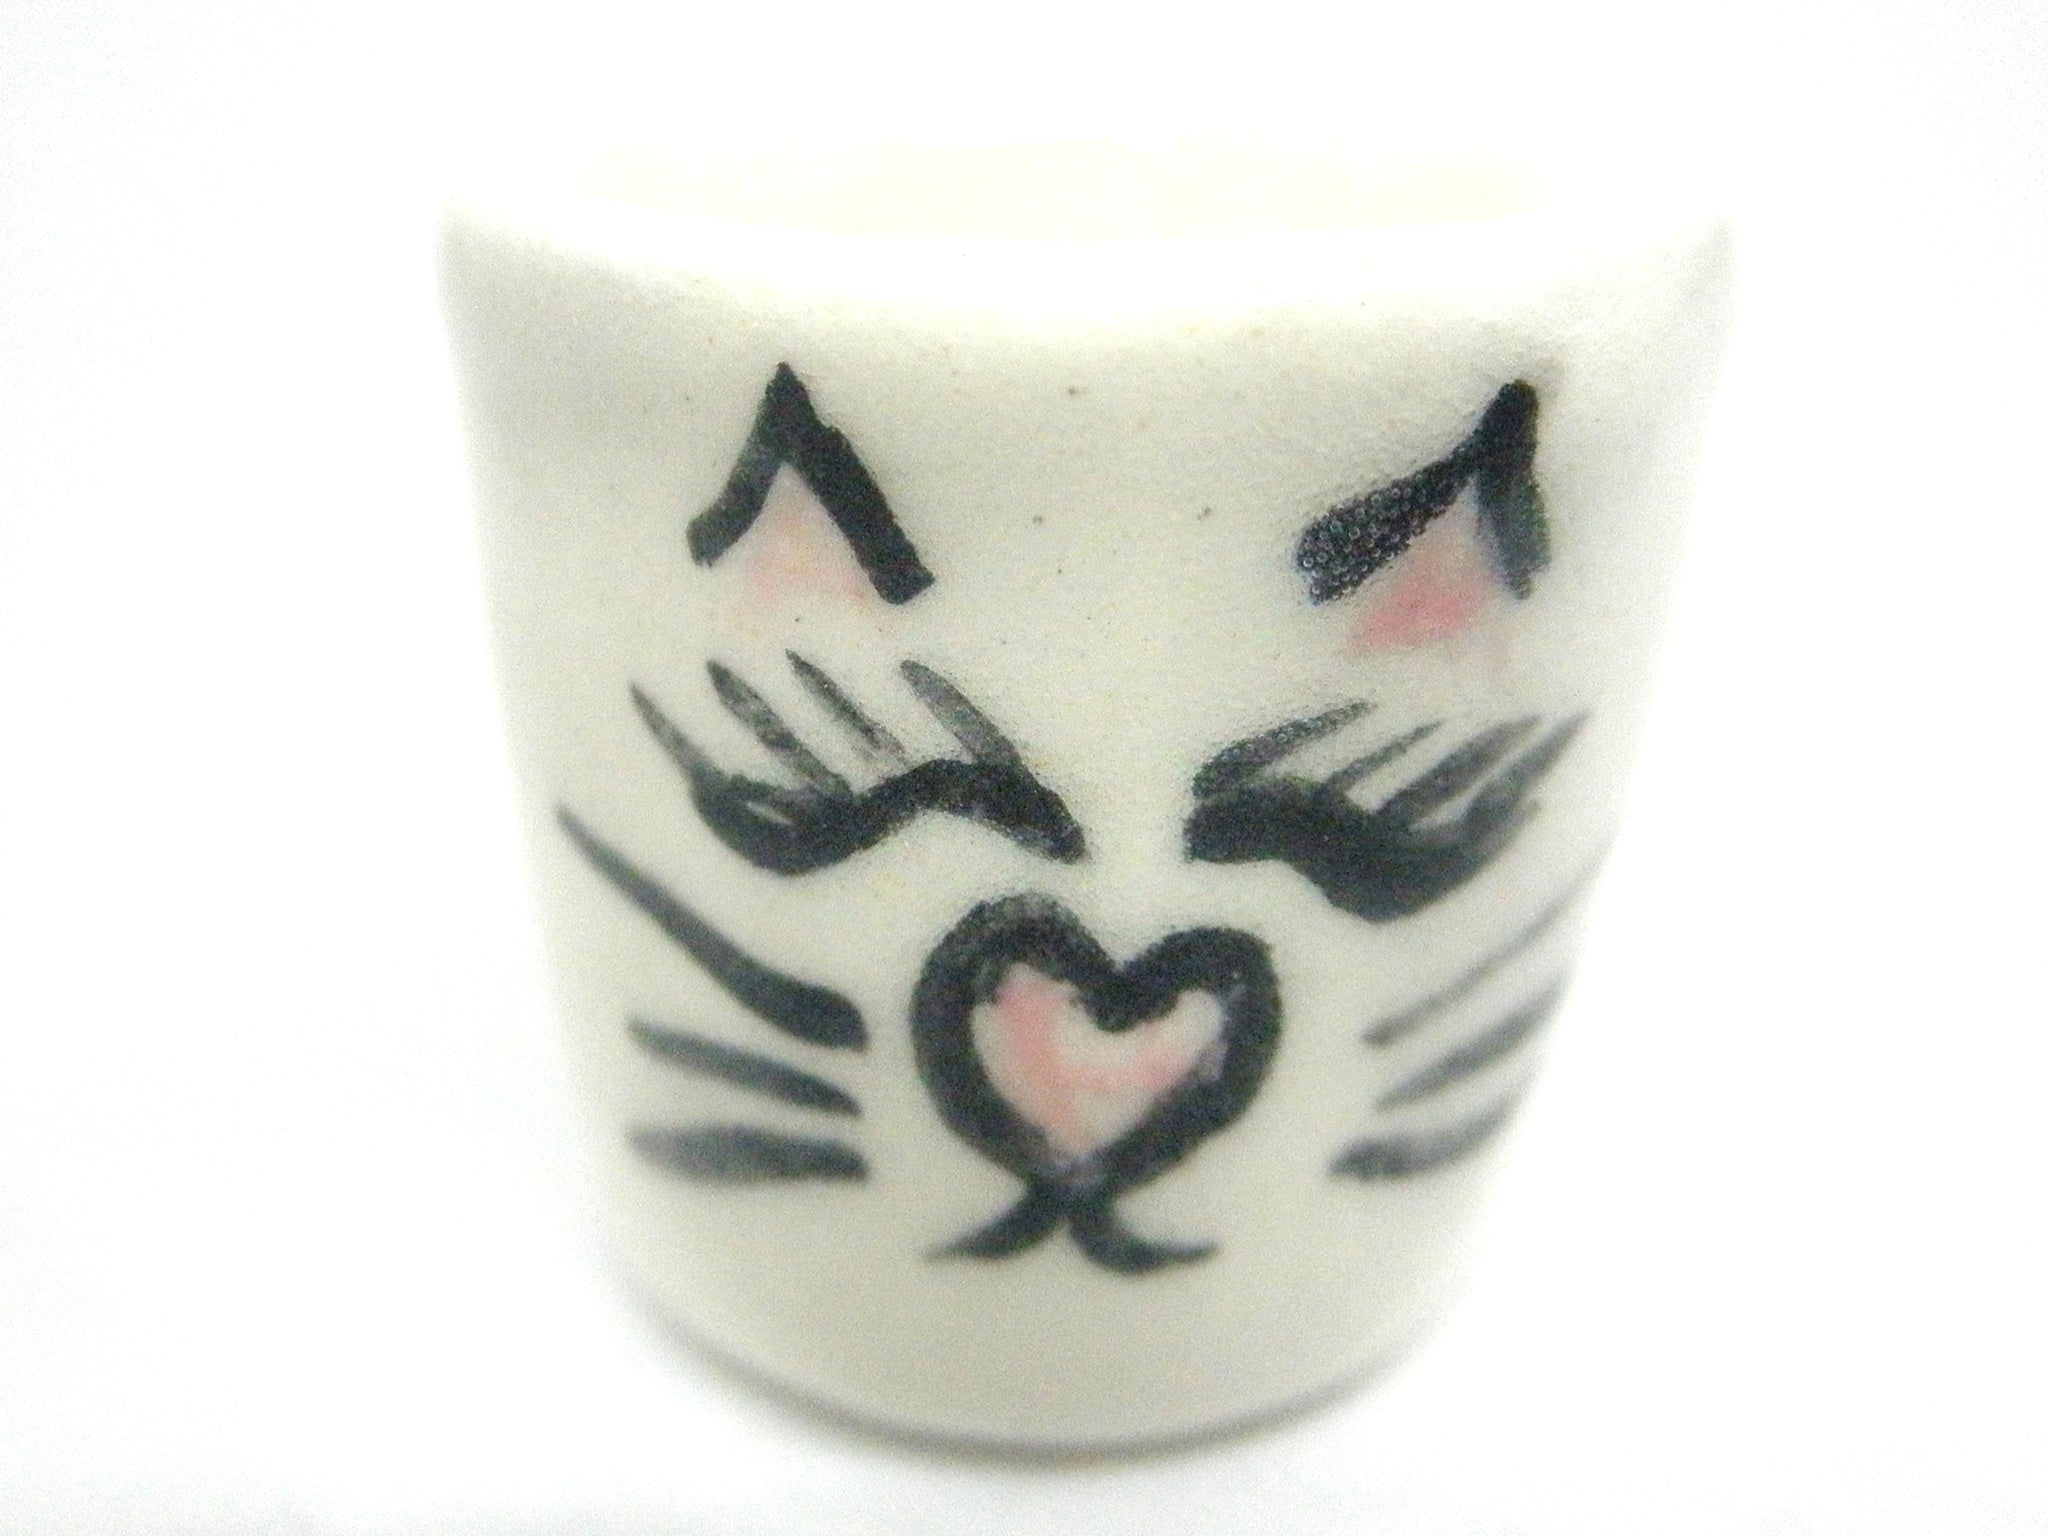 Miniature ceramic planter with cat face